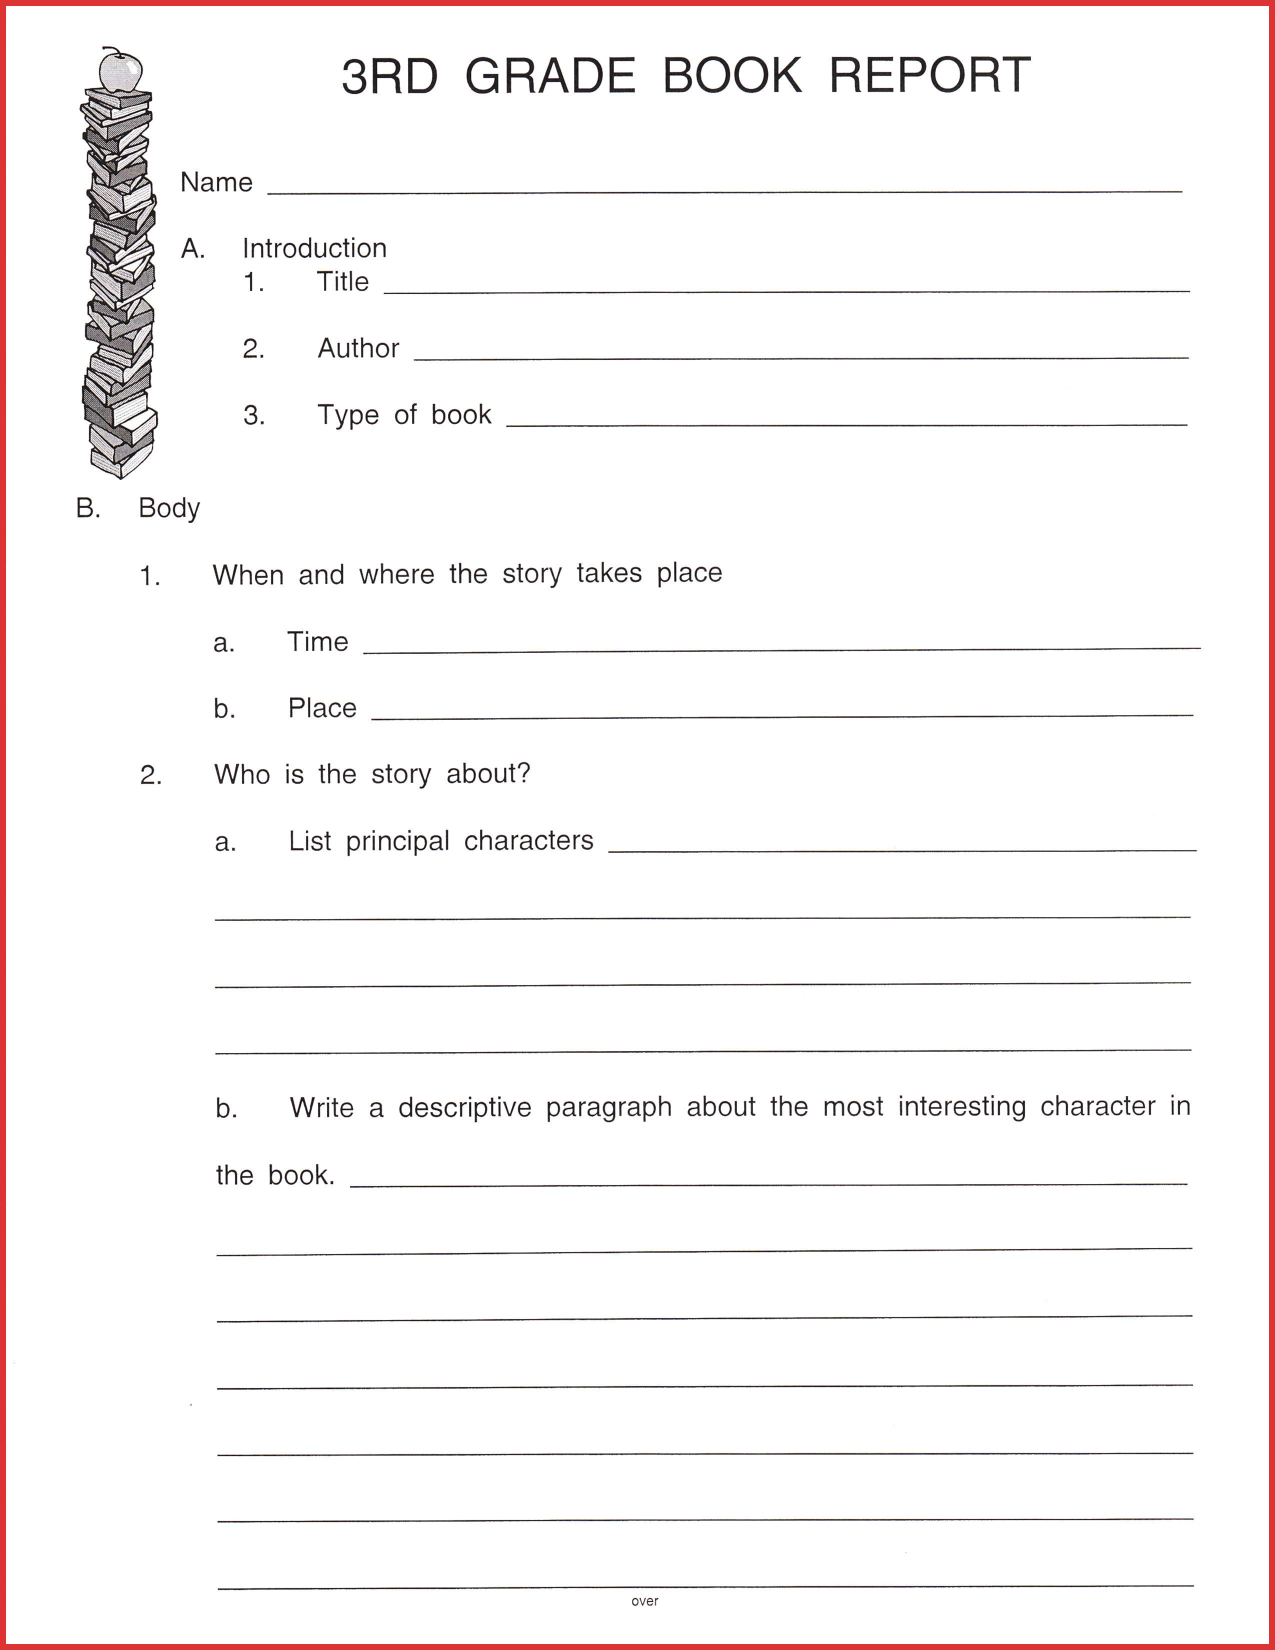 Fresh 3Rd Grade Book Report Template | Job Latter Intended For 1St Grade Book Report Template